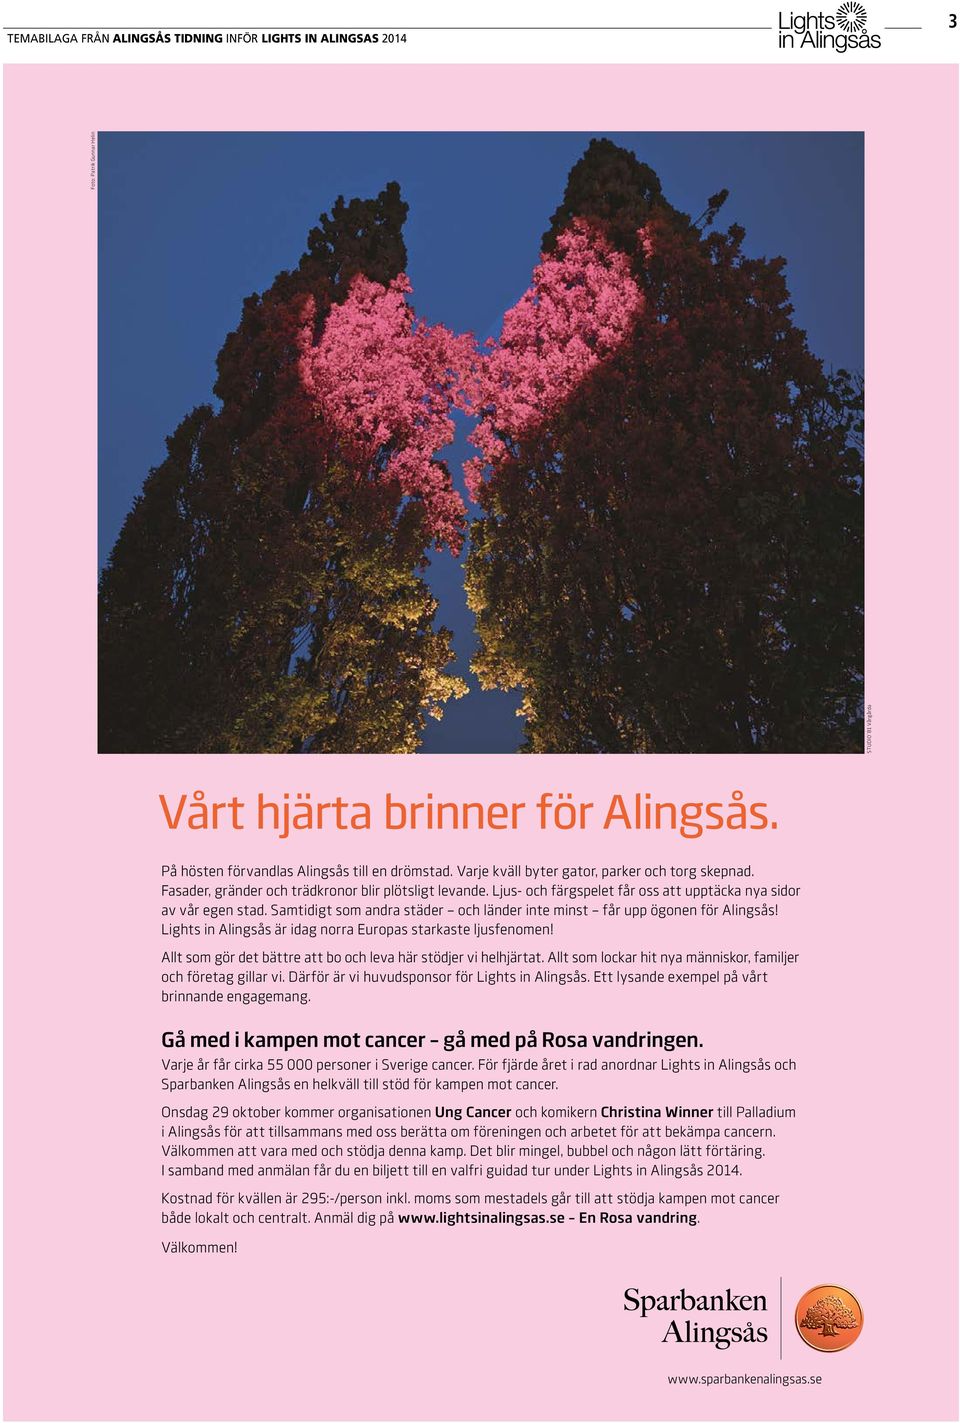 Samtidigt som andra städer och länder inte minst får upp ögonen för Alingsås! Lights in Alingsås är idag norra Europas starkaste ljusfenomen!